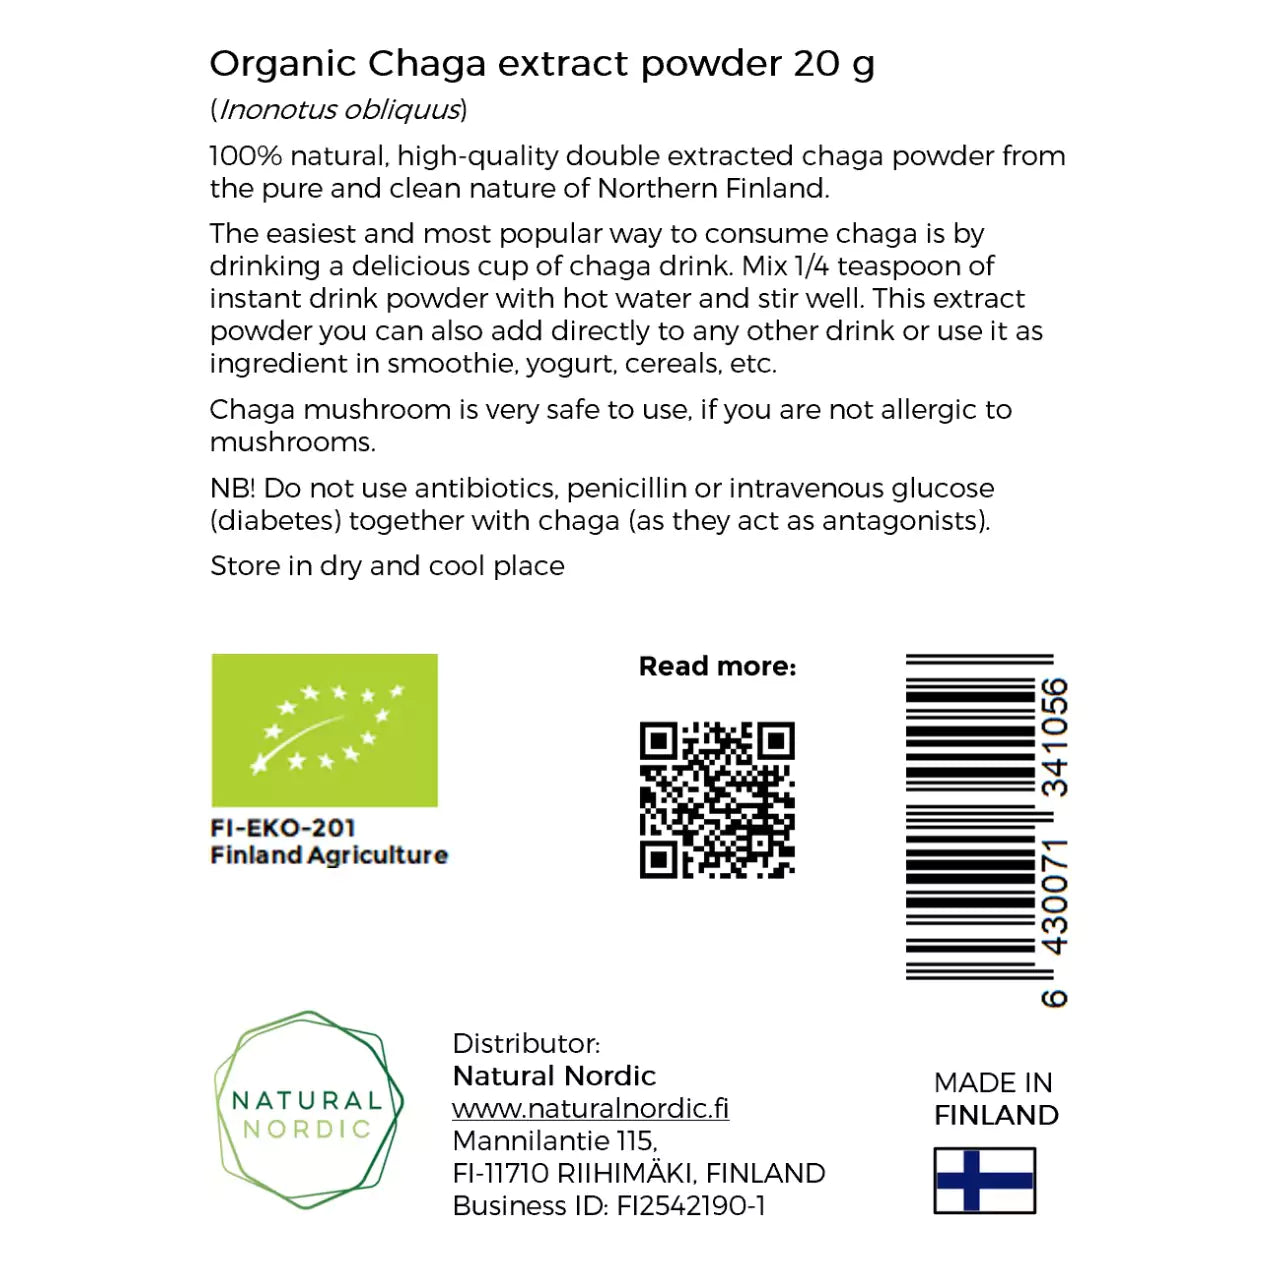 ORGANIC CHAGA EXTRACT POWDER - Natural Nordic